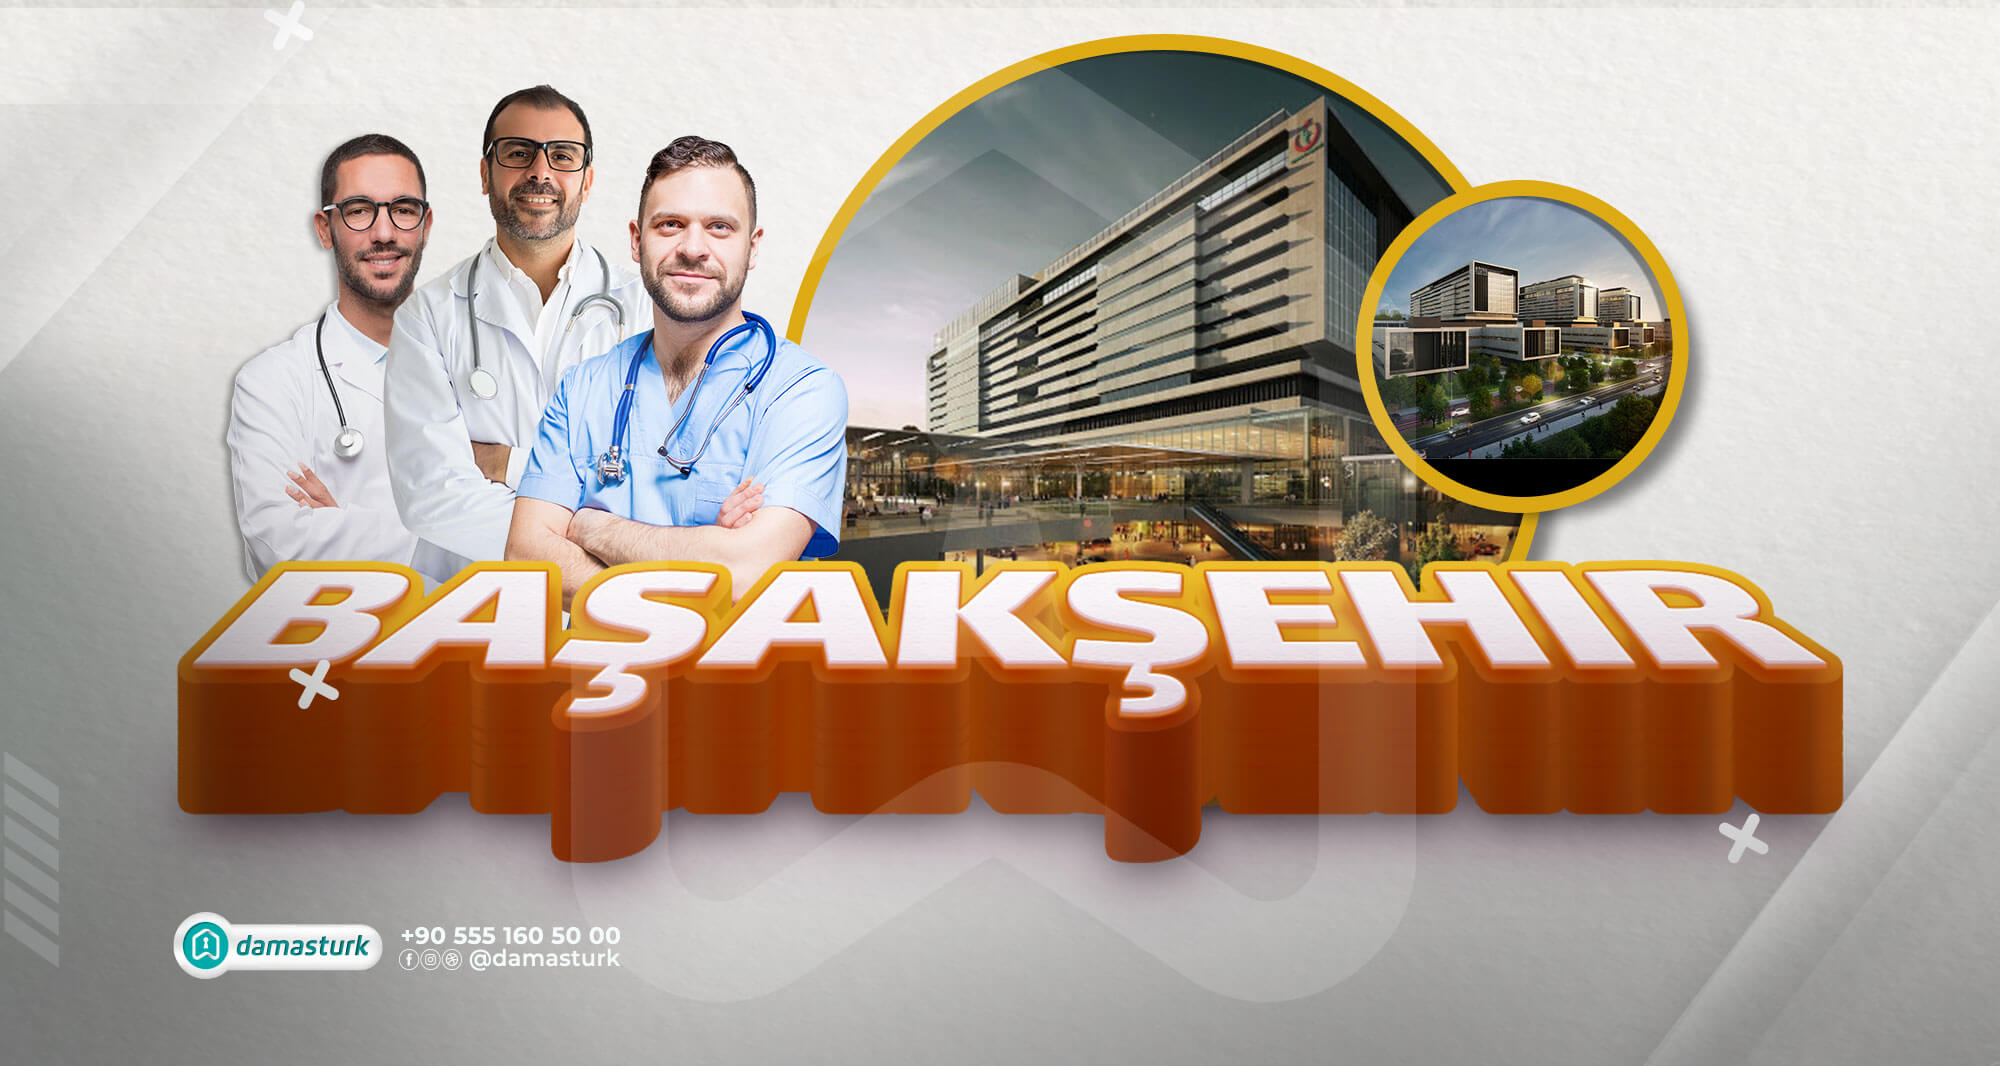 المشافي والمؤسسات الطبية في منطقة باشاك شهير 2021